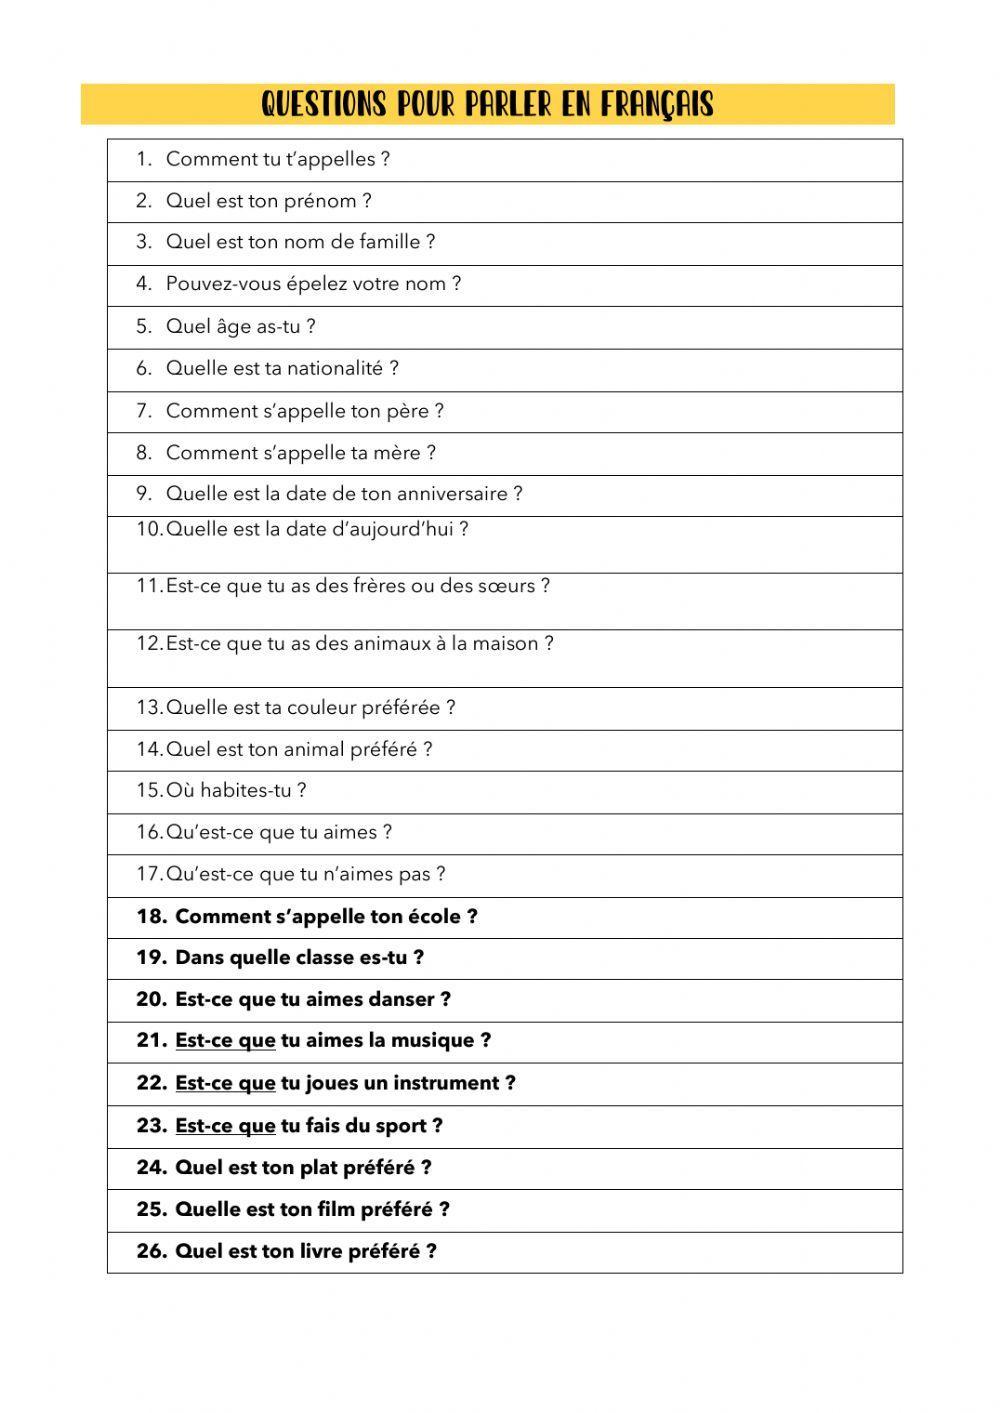 Questions pour parler en français